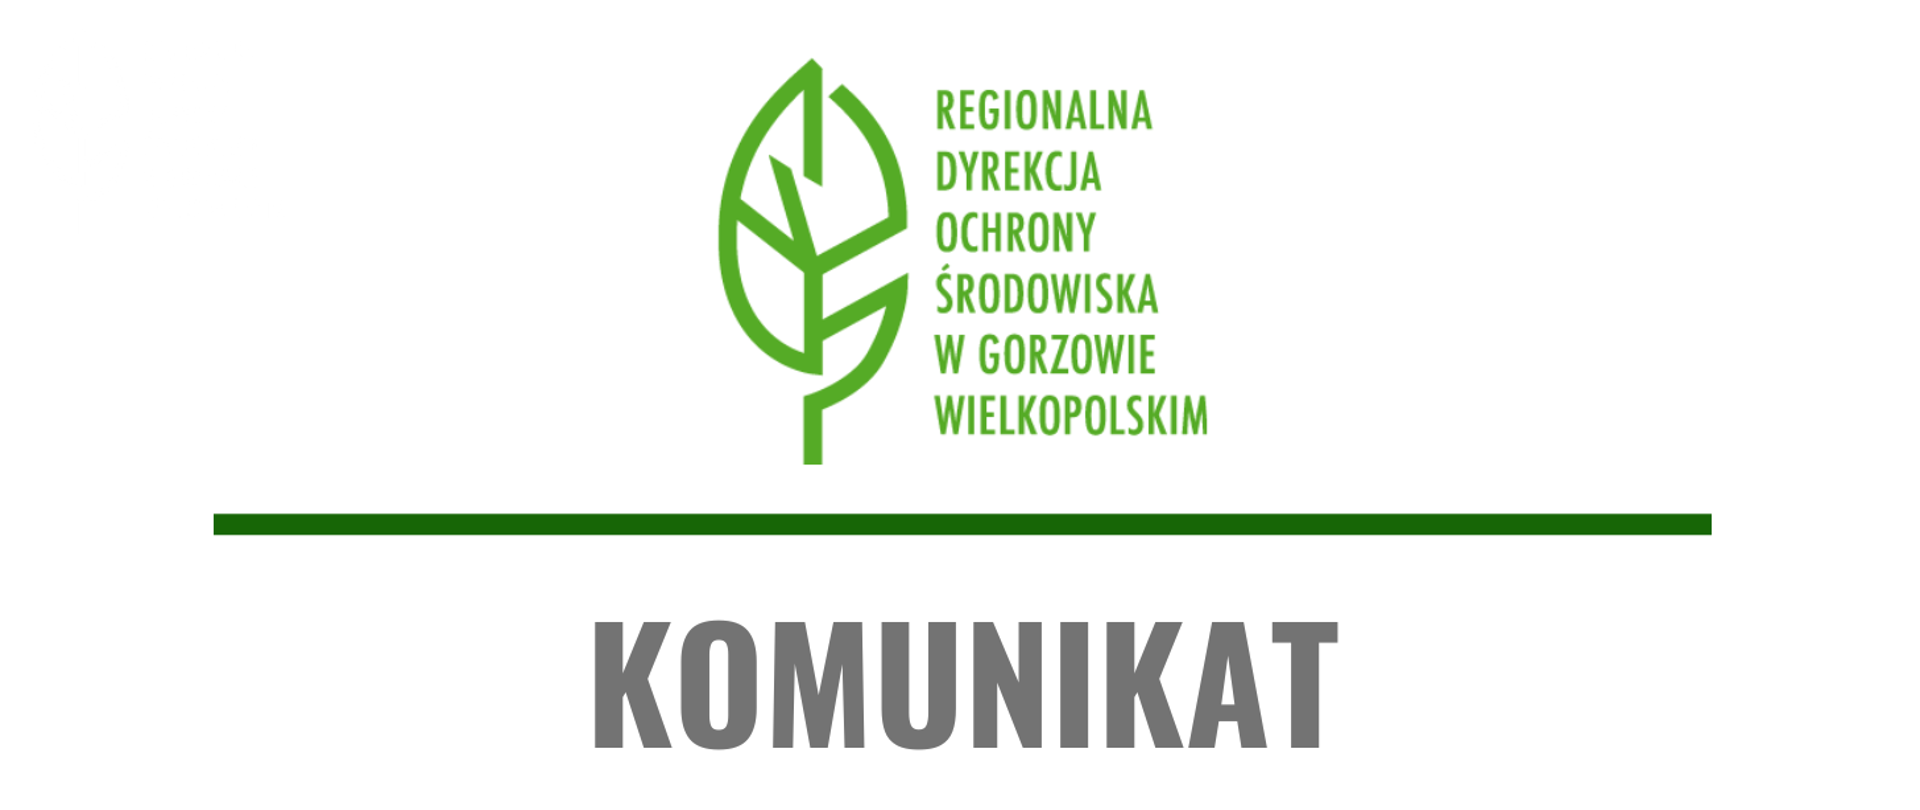 Zielony liść na białym tle, obok napis Regionalna Dyrekcja Ochrony Środowiska w Gorzowie Wielkopolskim, poniżej zielona pozioma linia, pod nią napis: Komunikat.